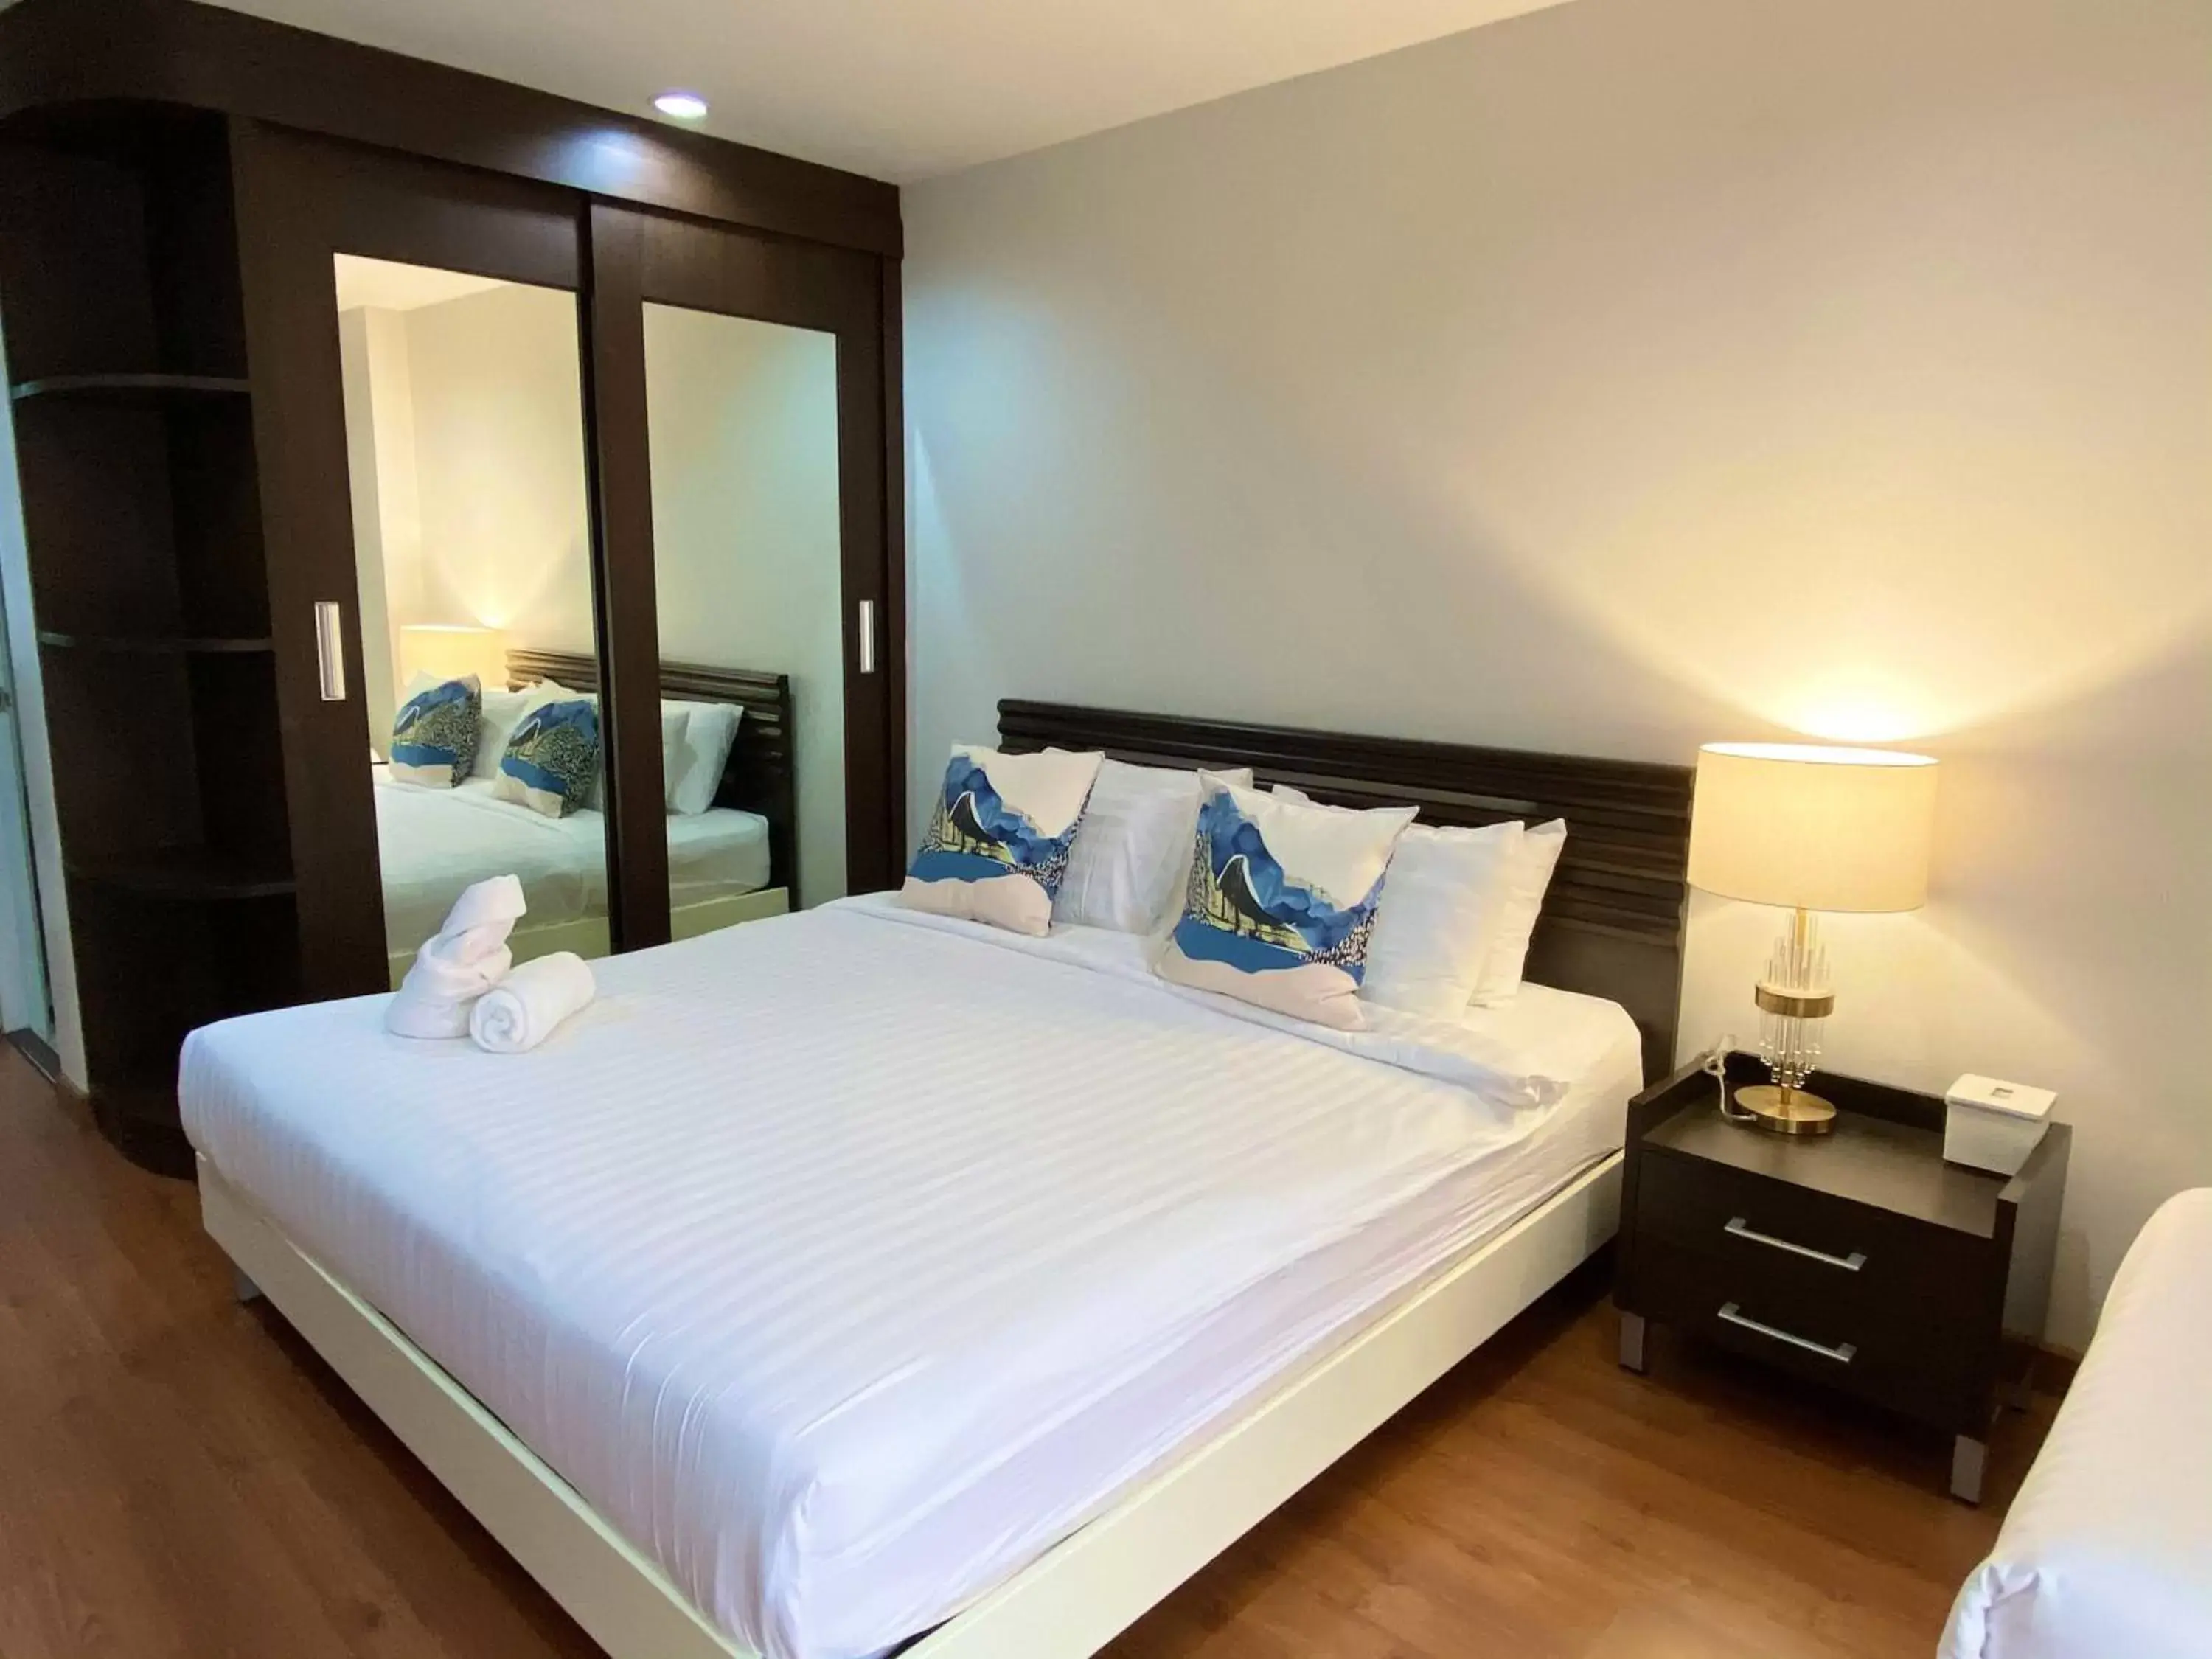 Bed in 14 Place Sukhumvit Suites